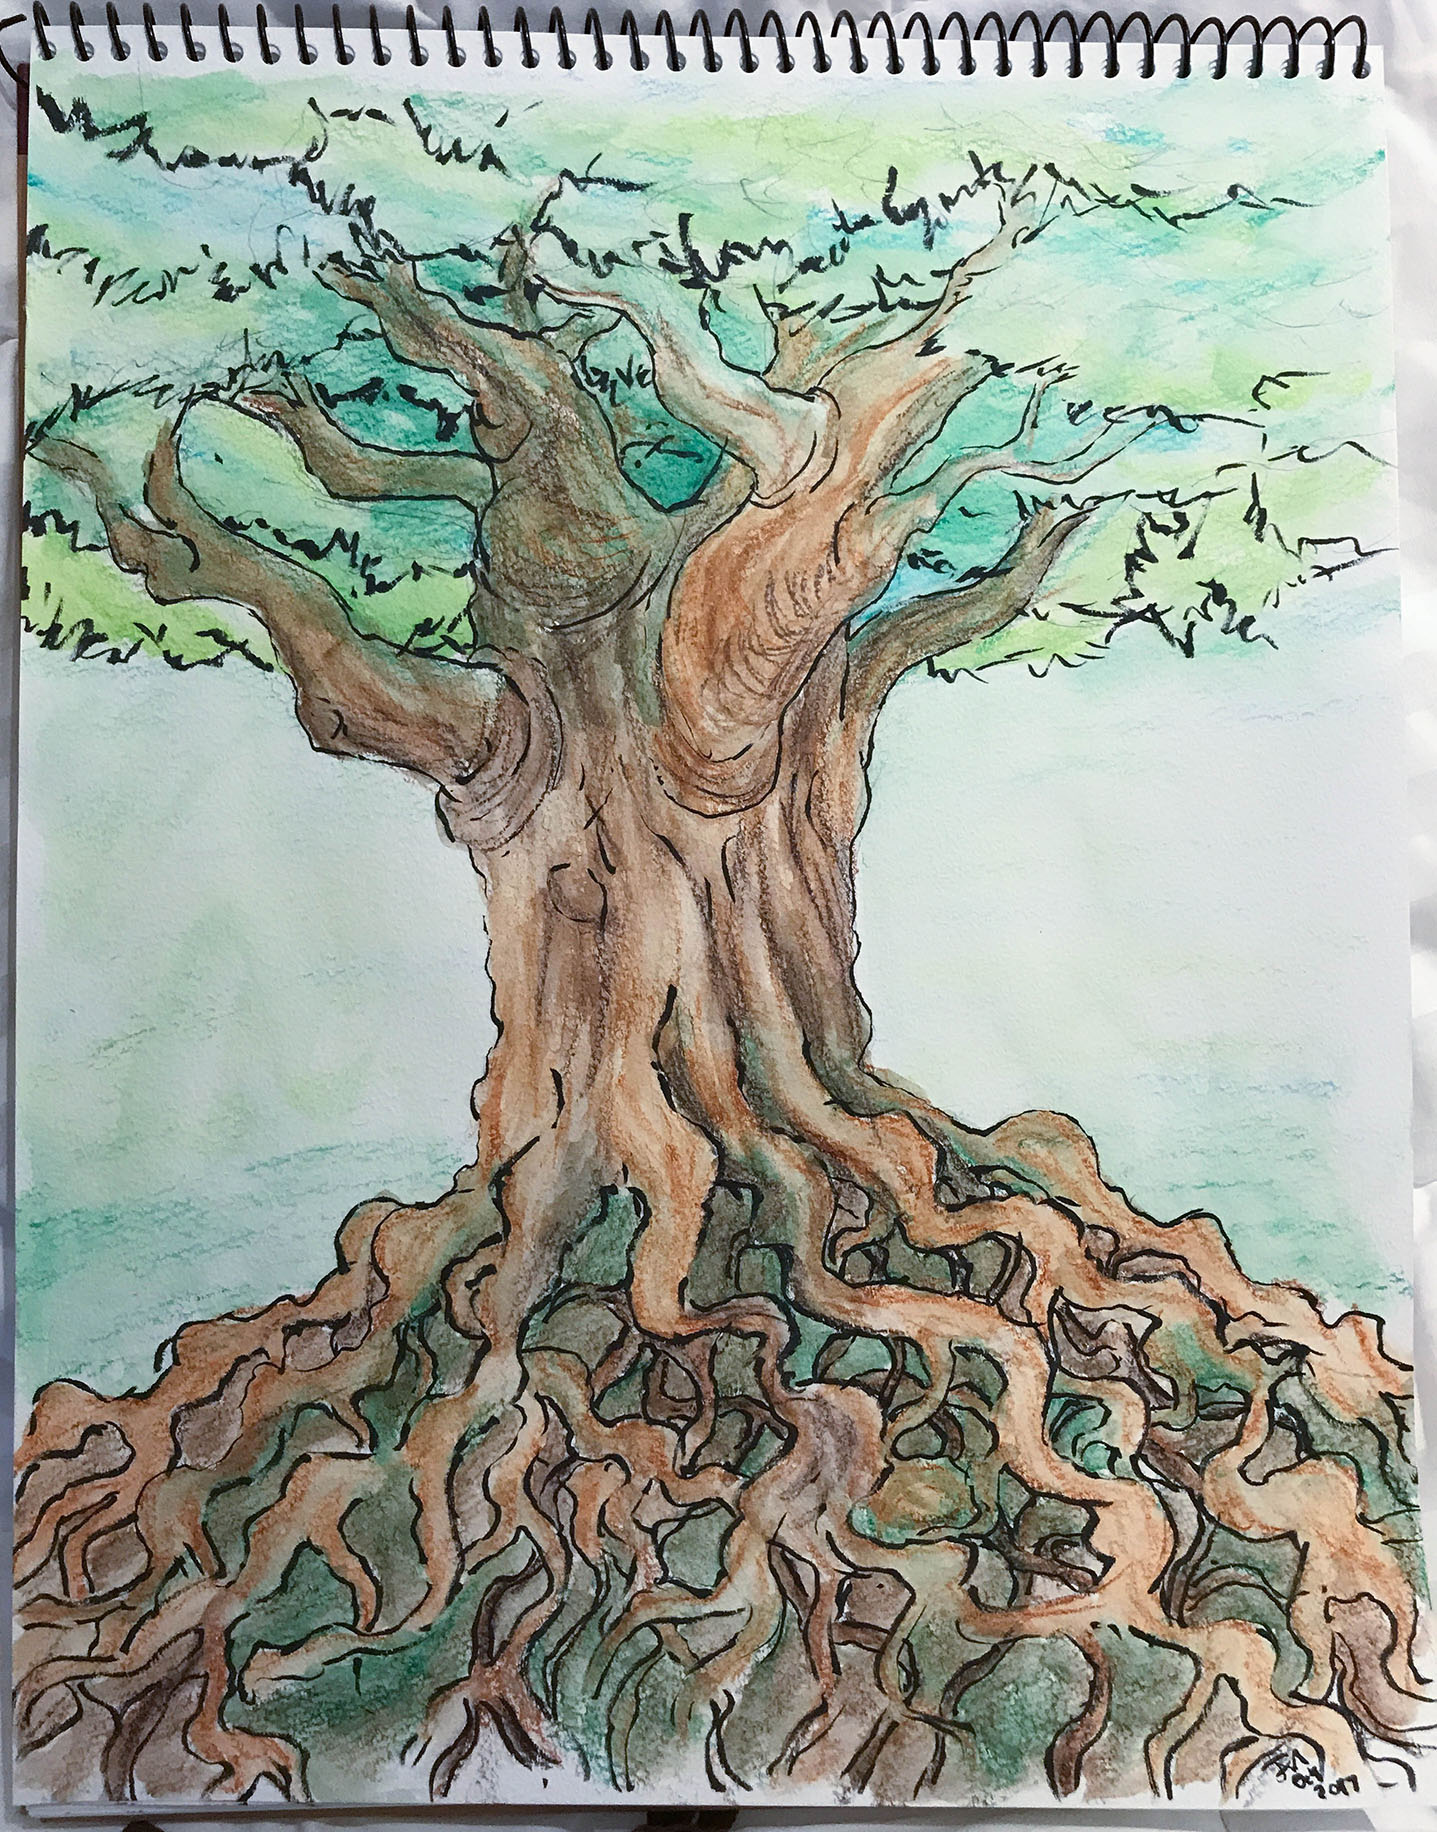 watercolor tree